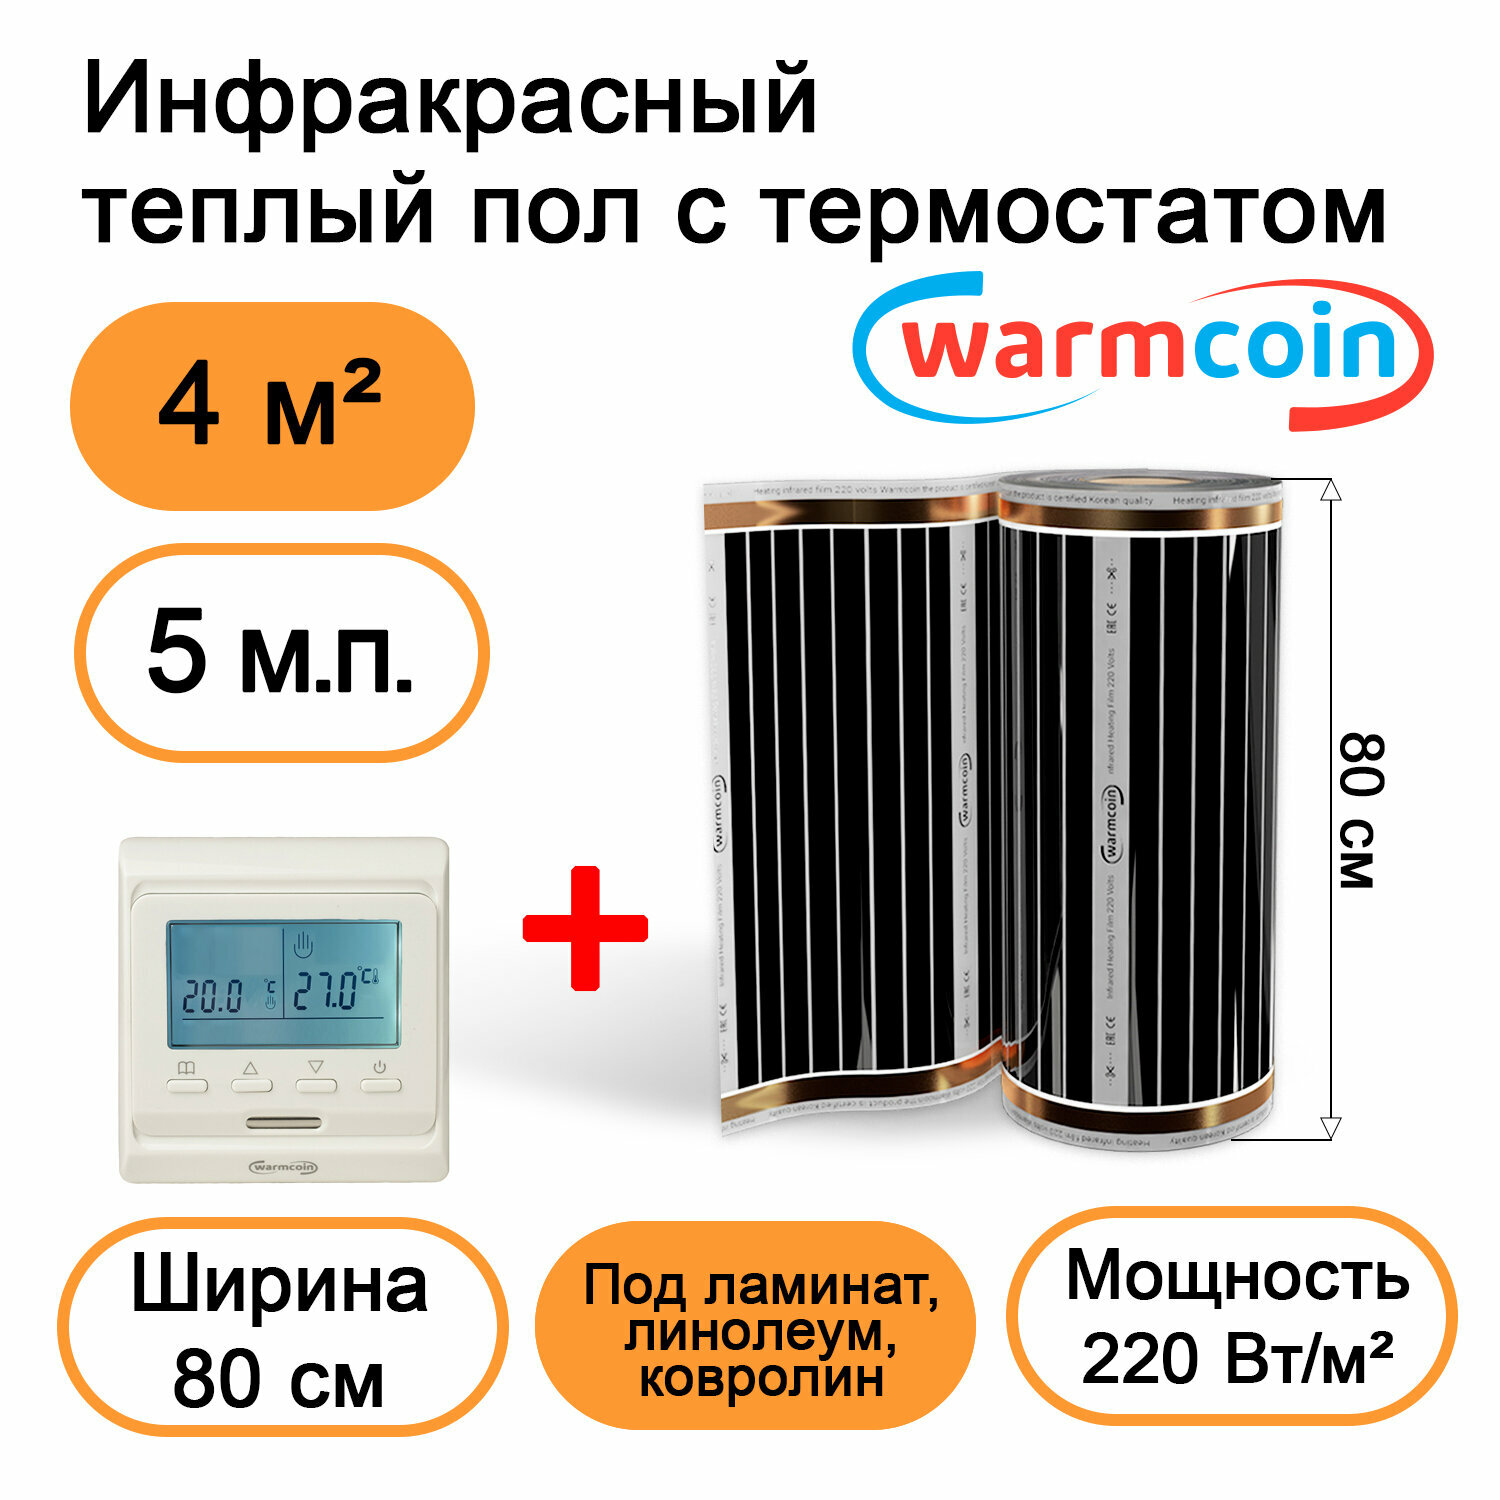 Теплый пол Warmcoin инфракрасный 80 см, 220 Вт/м.кв. с электронным терморегулятором, 5 м.п